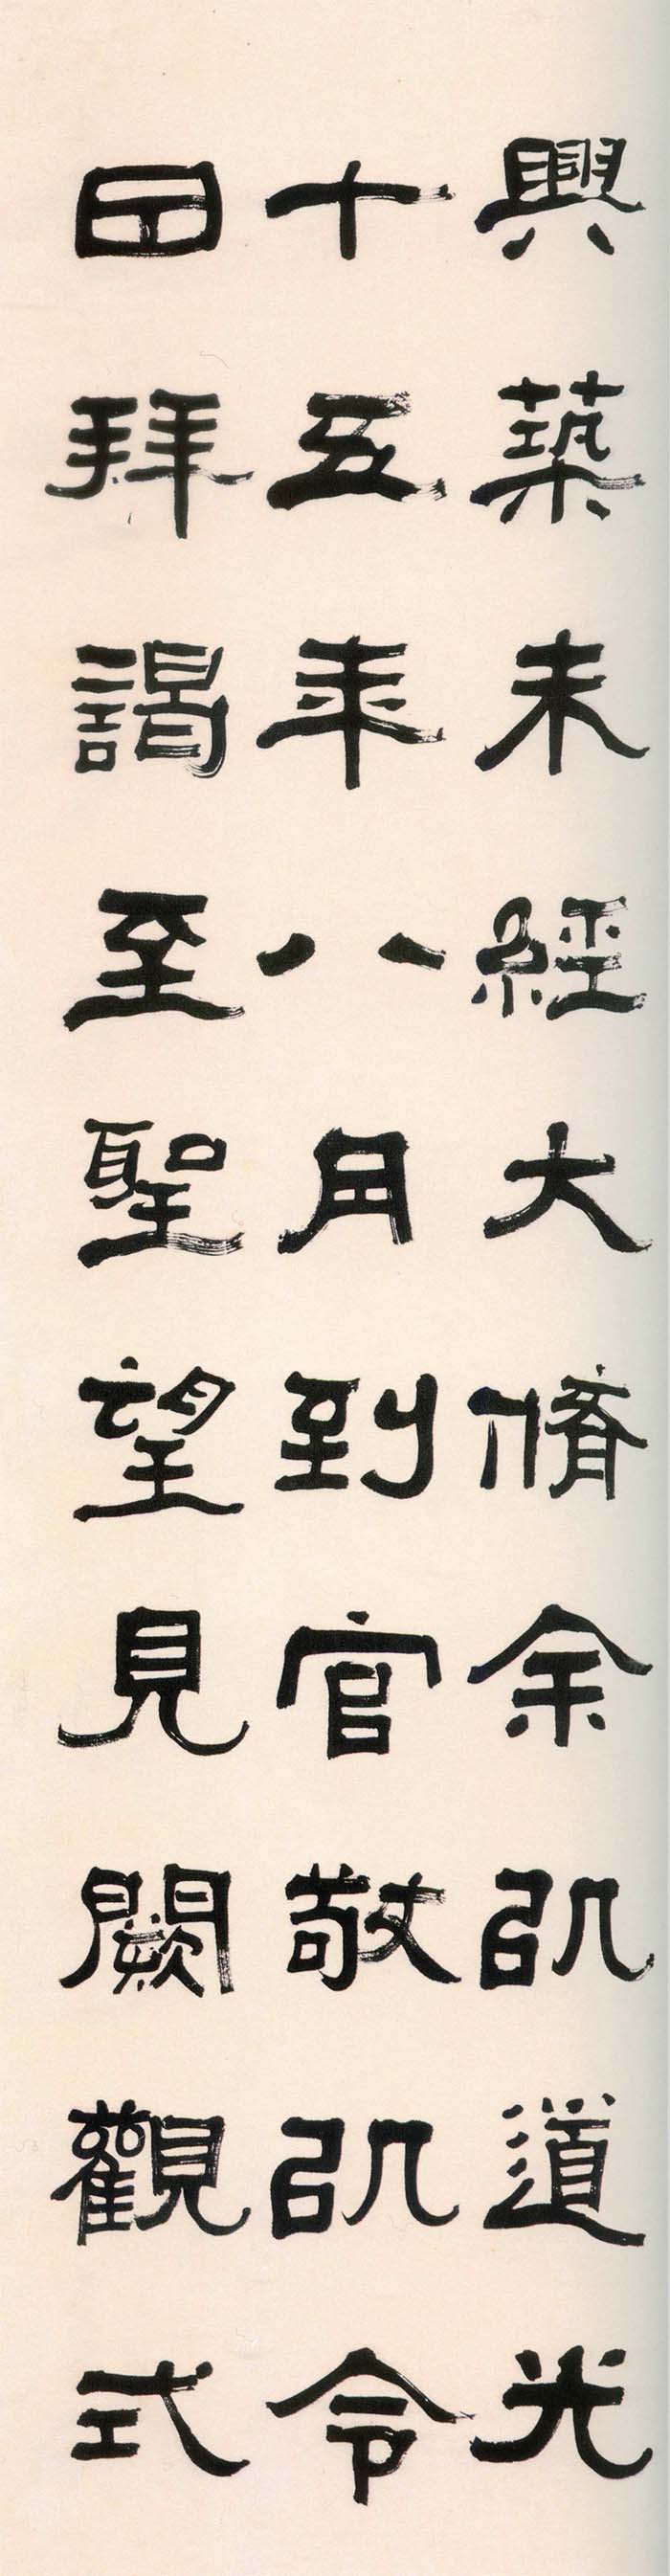 张祖翼《隶书集碑记四条屏》- 常州市博物馆藏 (图2)